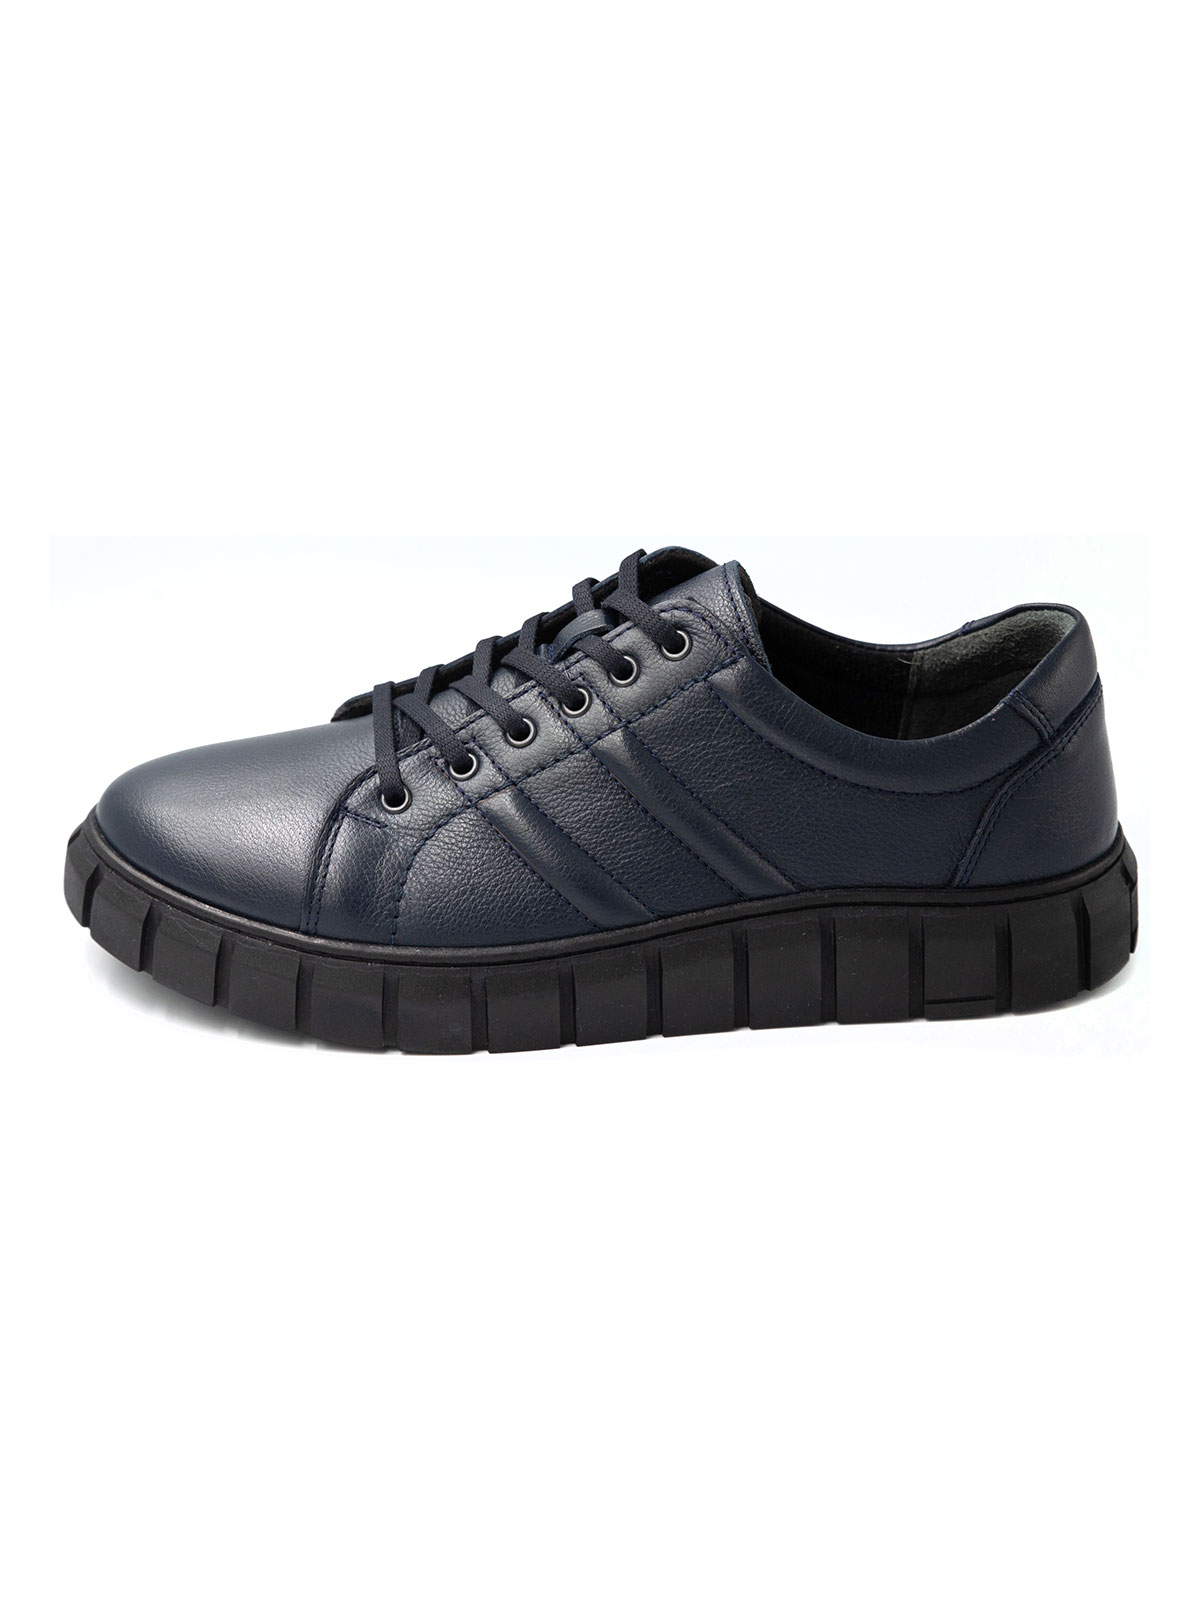 Σκούρα μπλε αθλητικά δερμάτινα παπούτσια - 81098 - € 41.62 img3